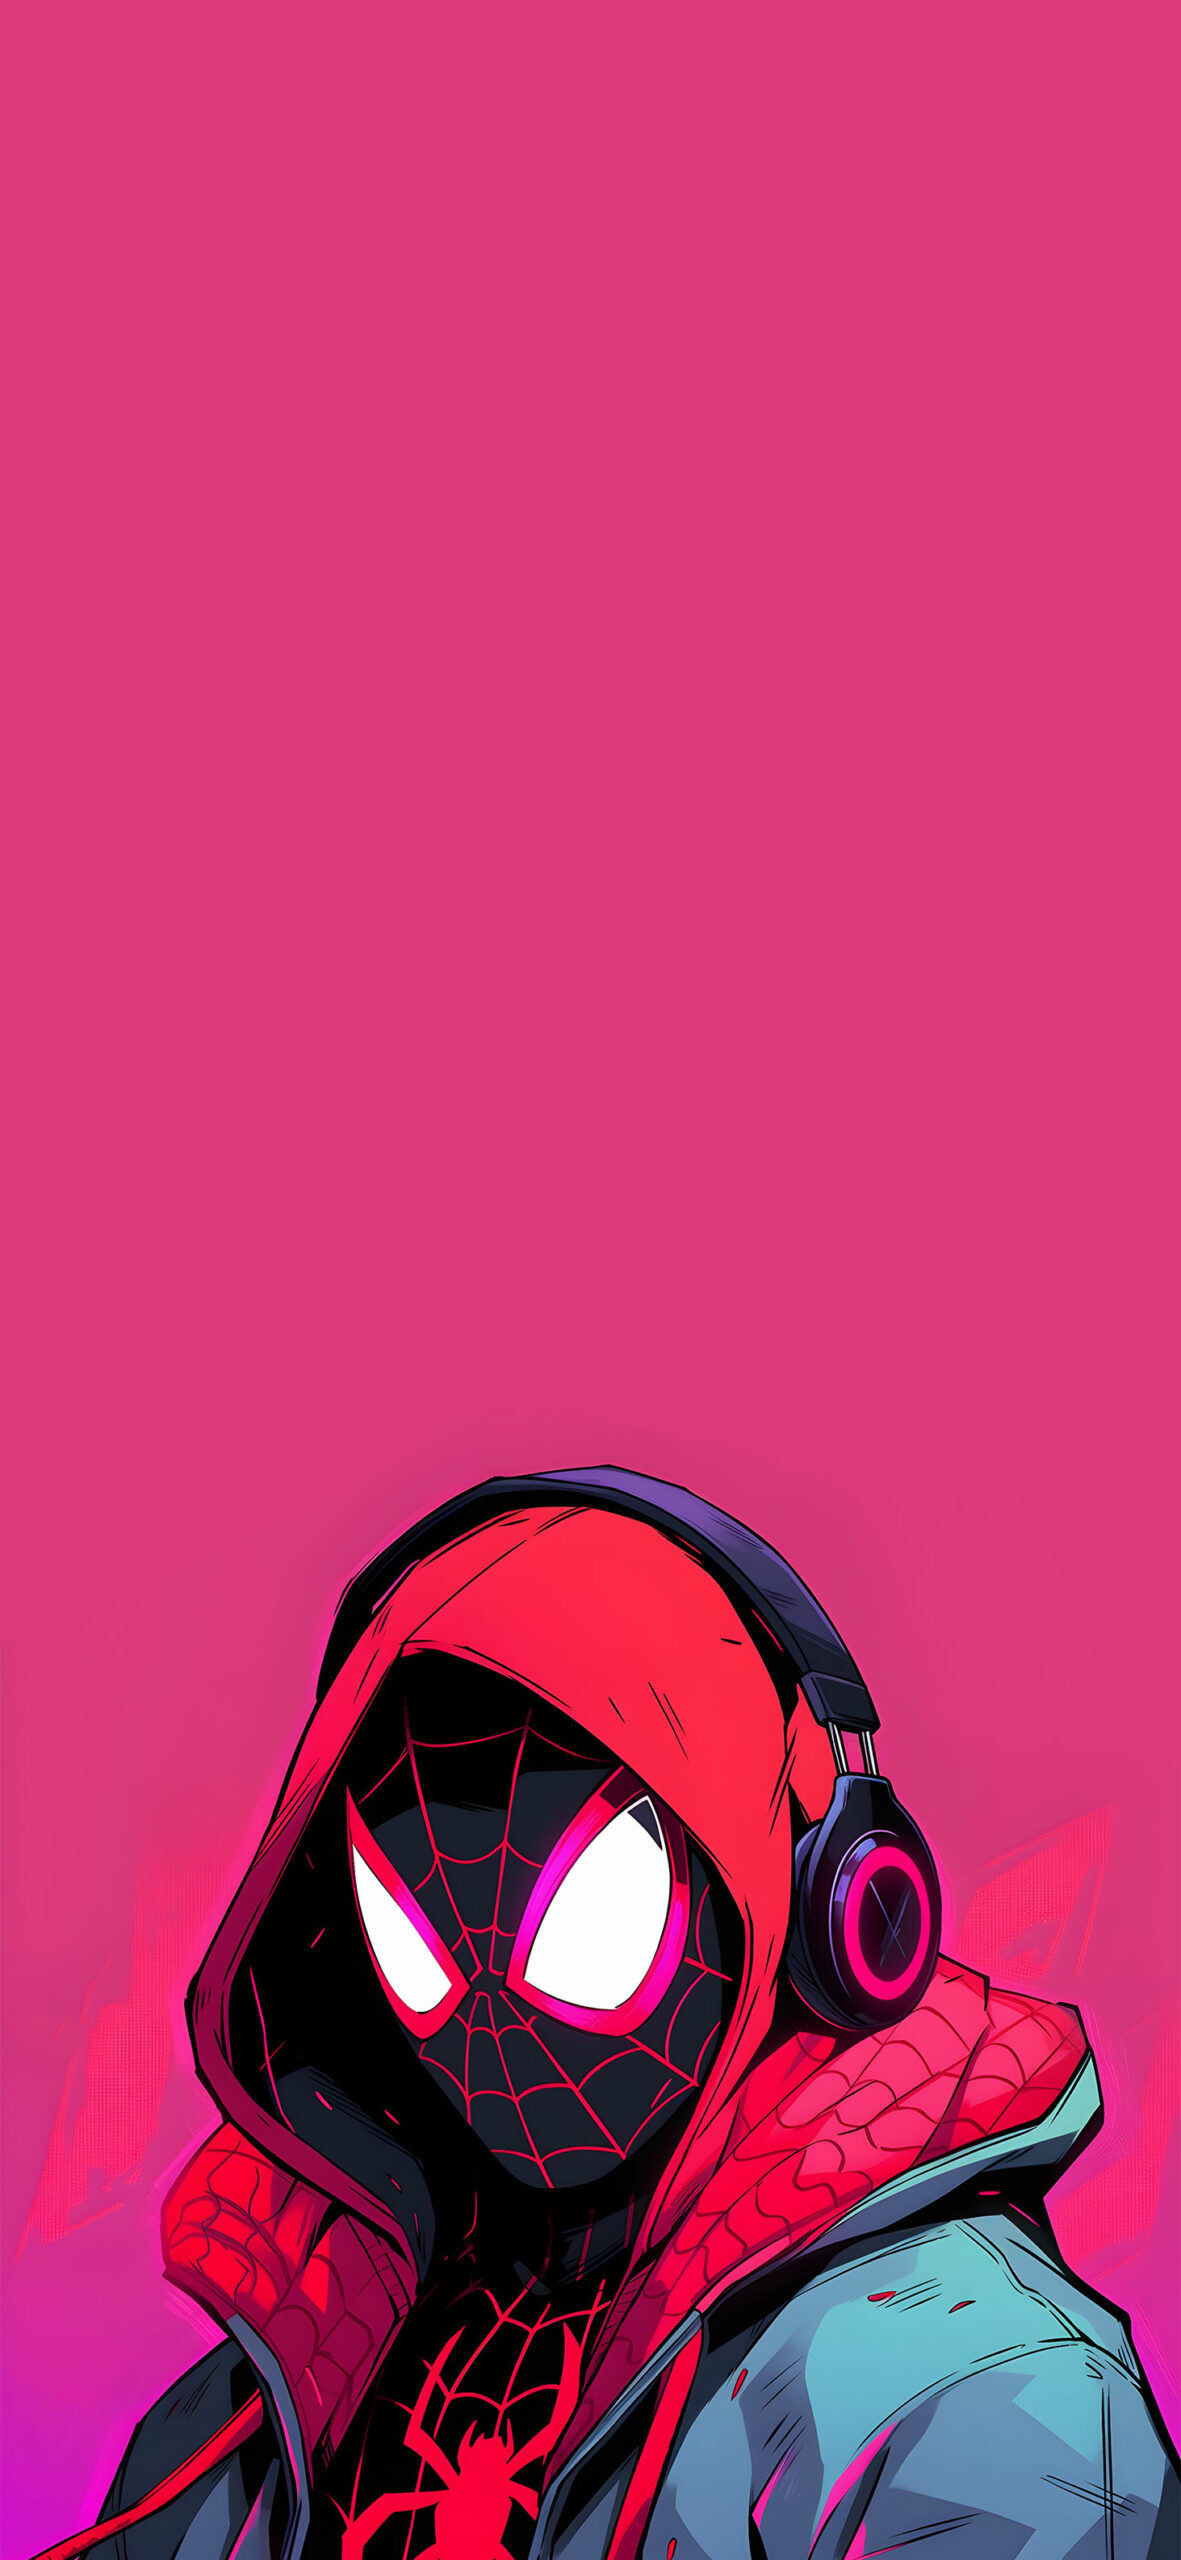 Marvel spider man miles morales in headphones wallpaper Best s